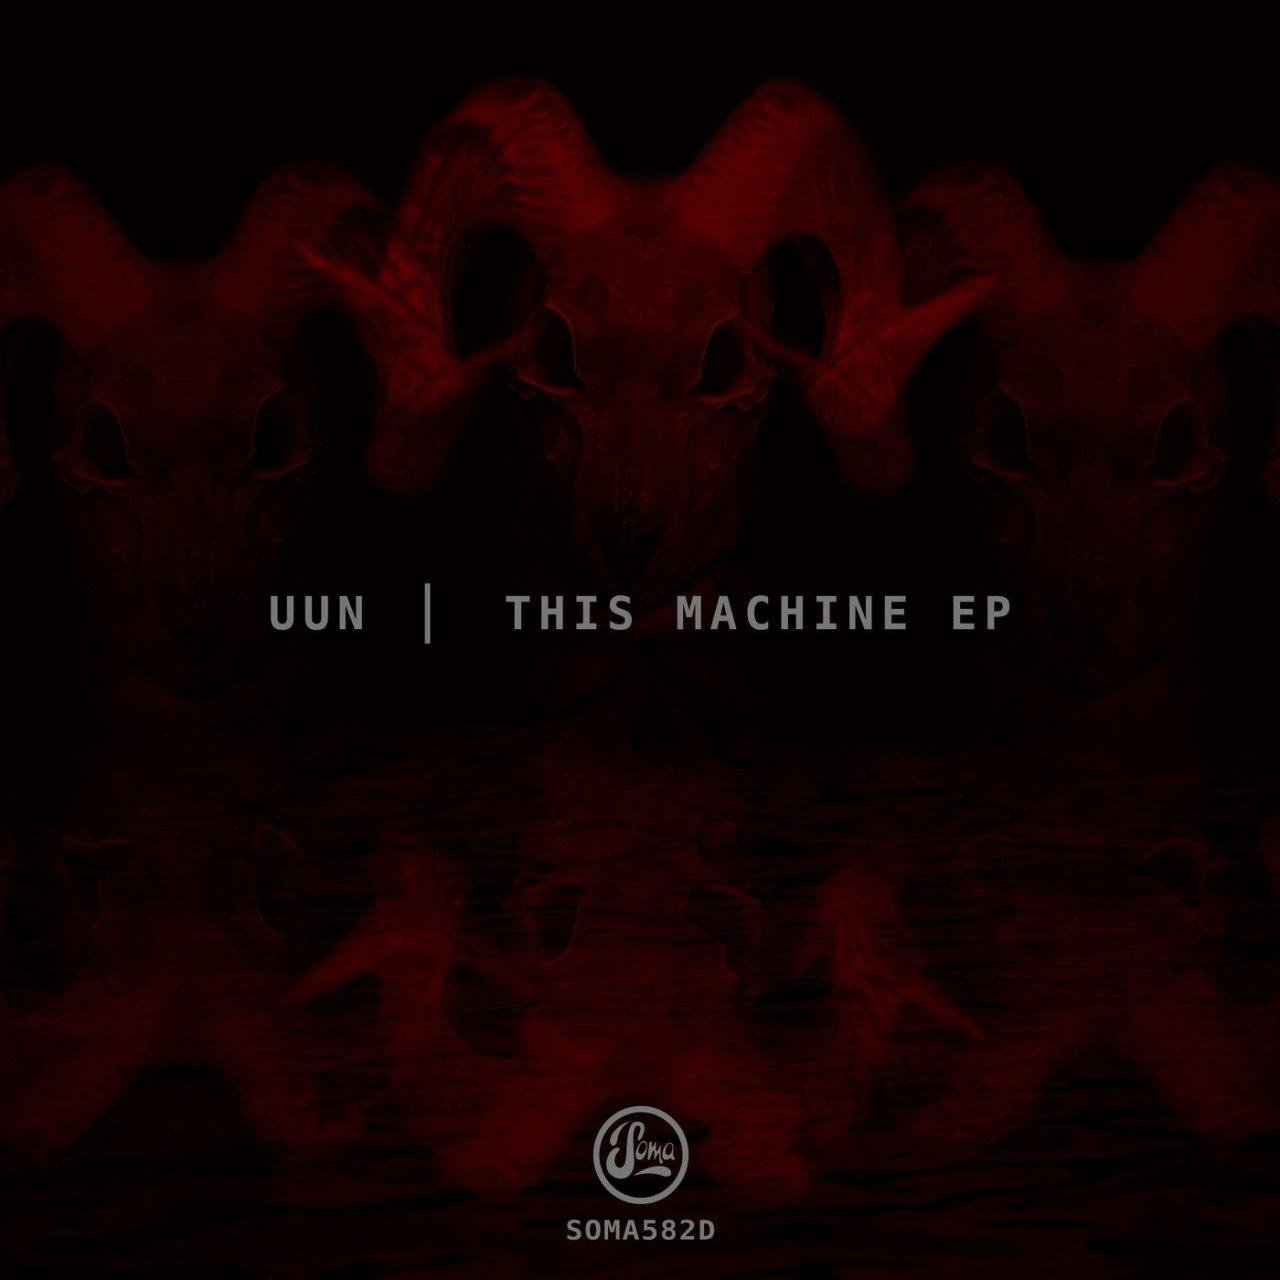 Uun-This Machine EP-(SOMA582D)-24BIT-WEB-FLAC-2020-BABAS Download